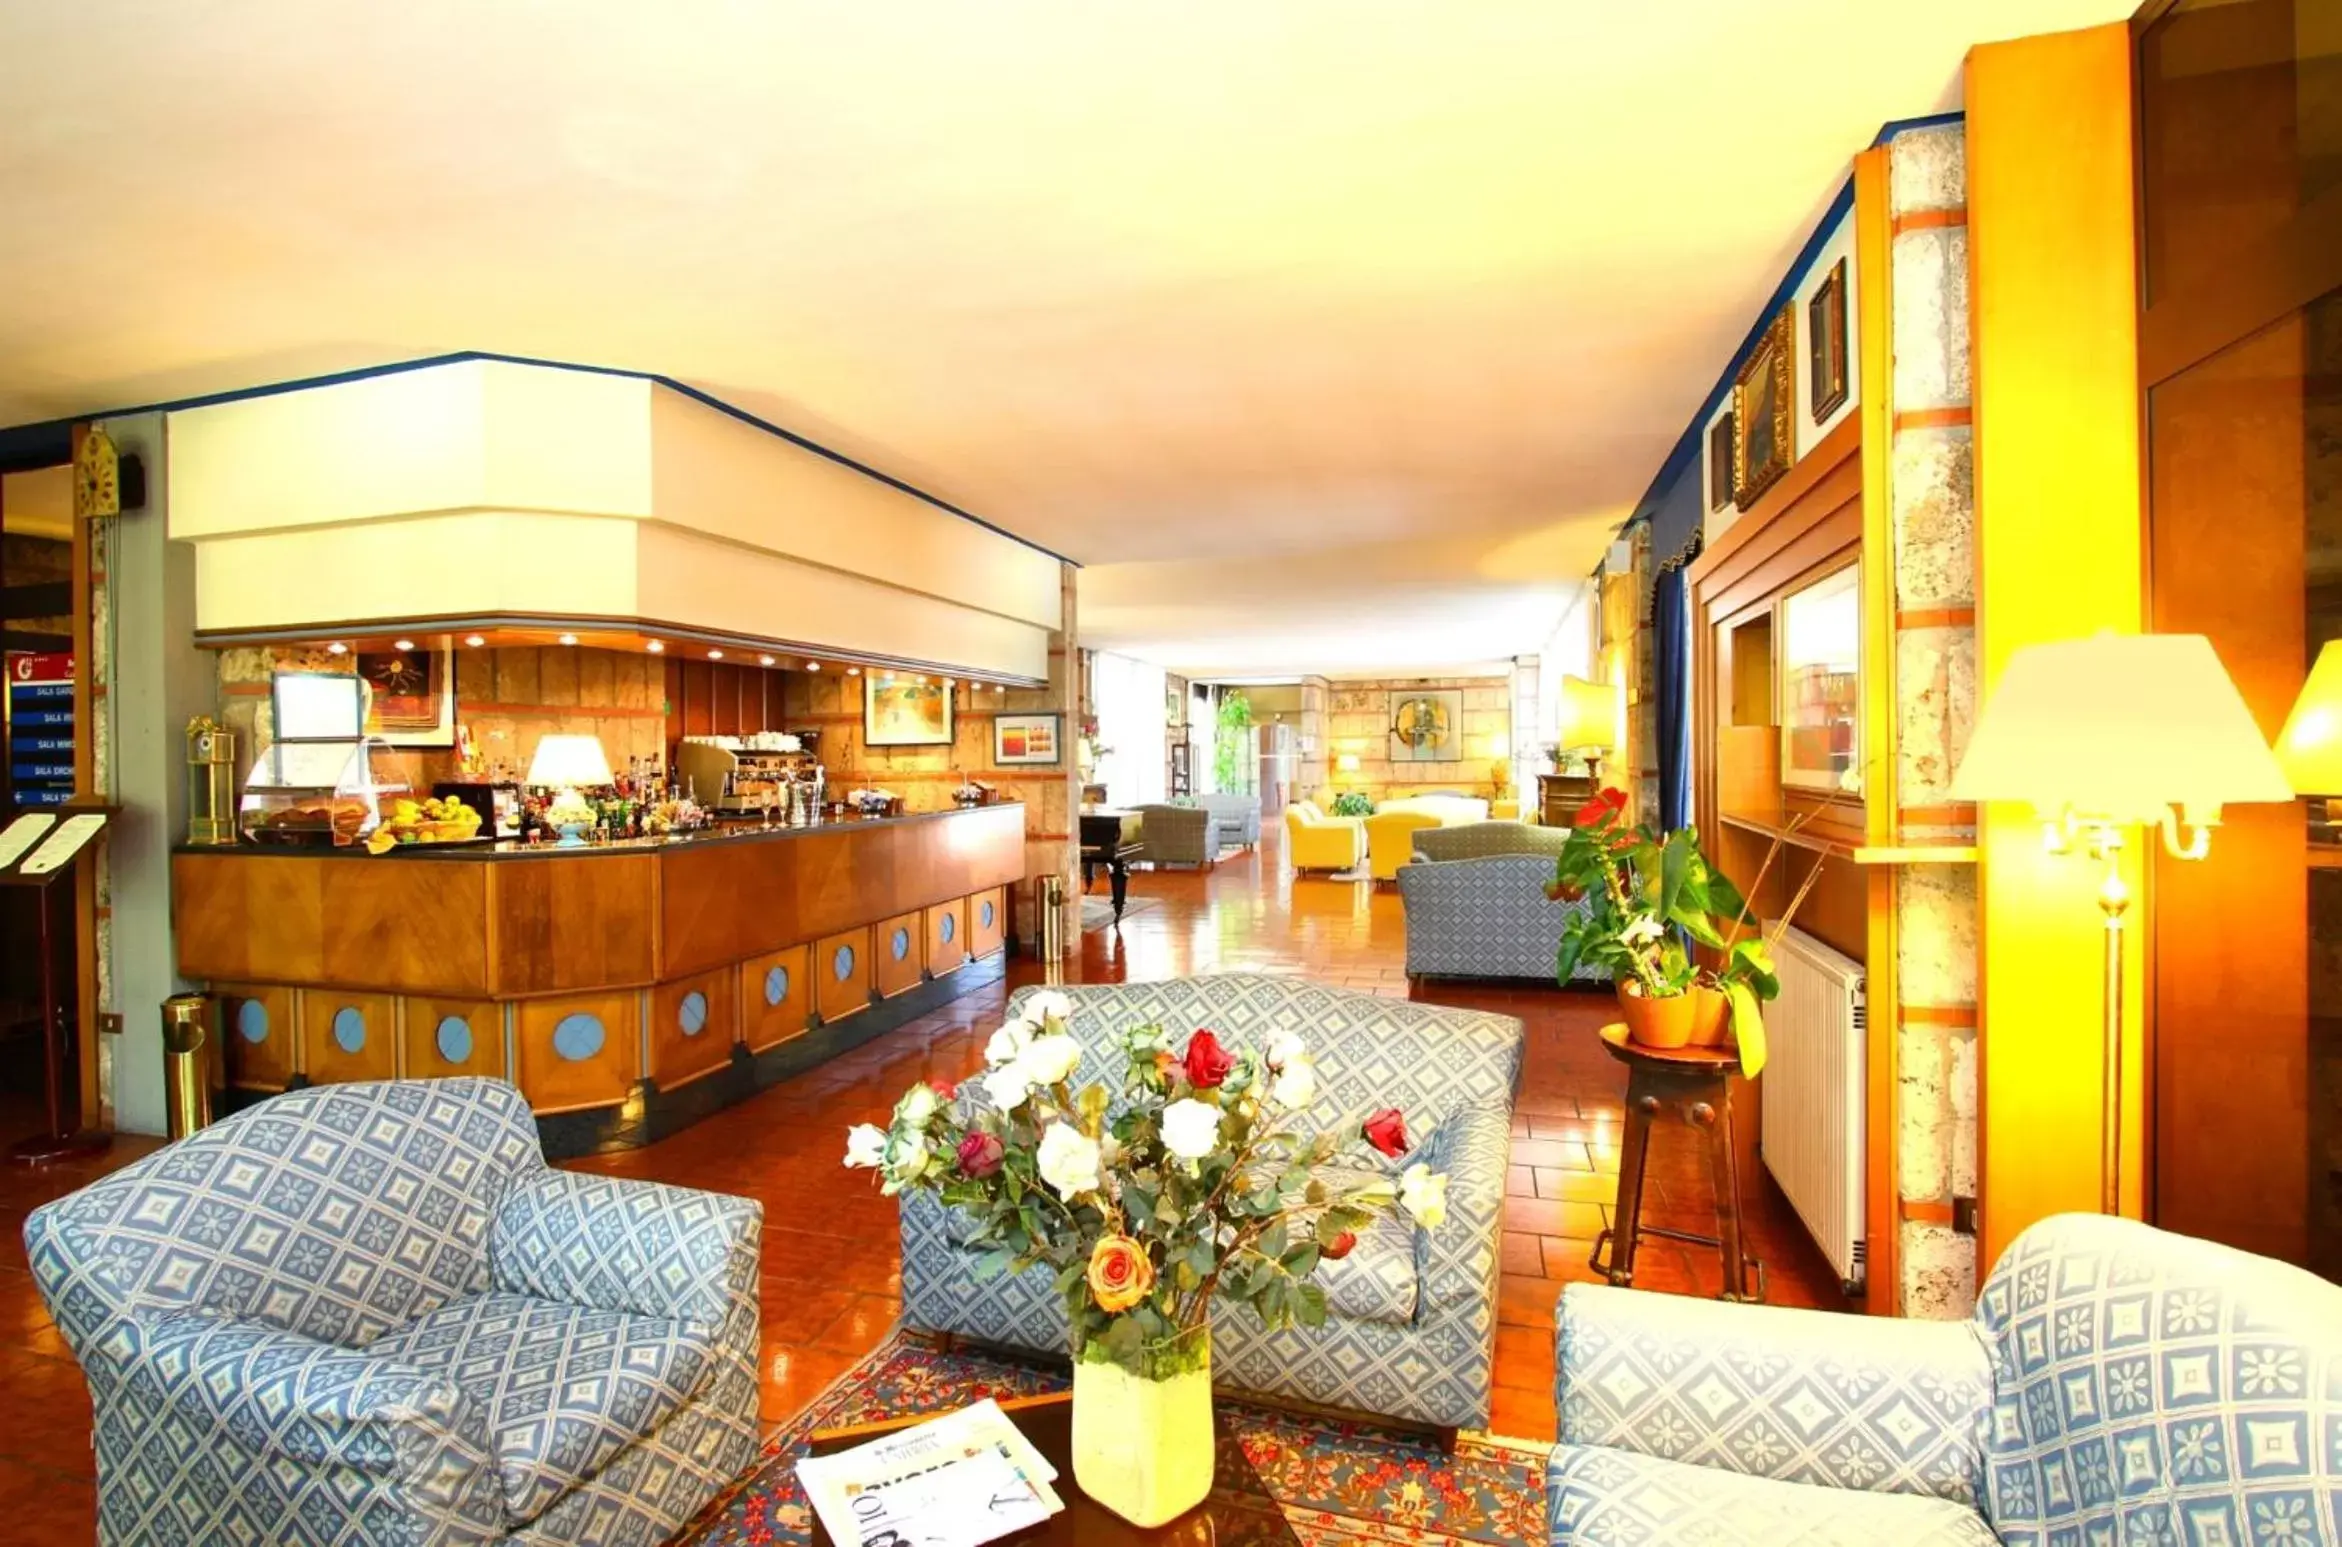 Lobby or reception, Lobby/Reception in Hotel Garden Terni